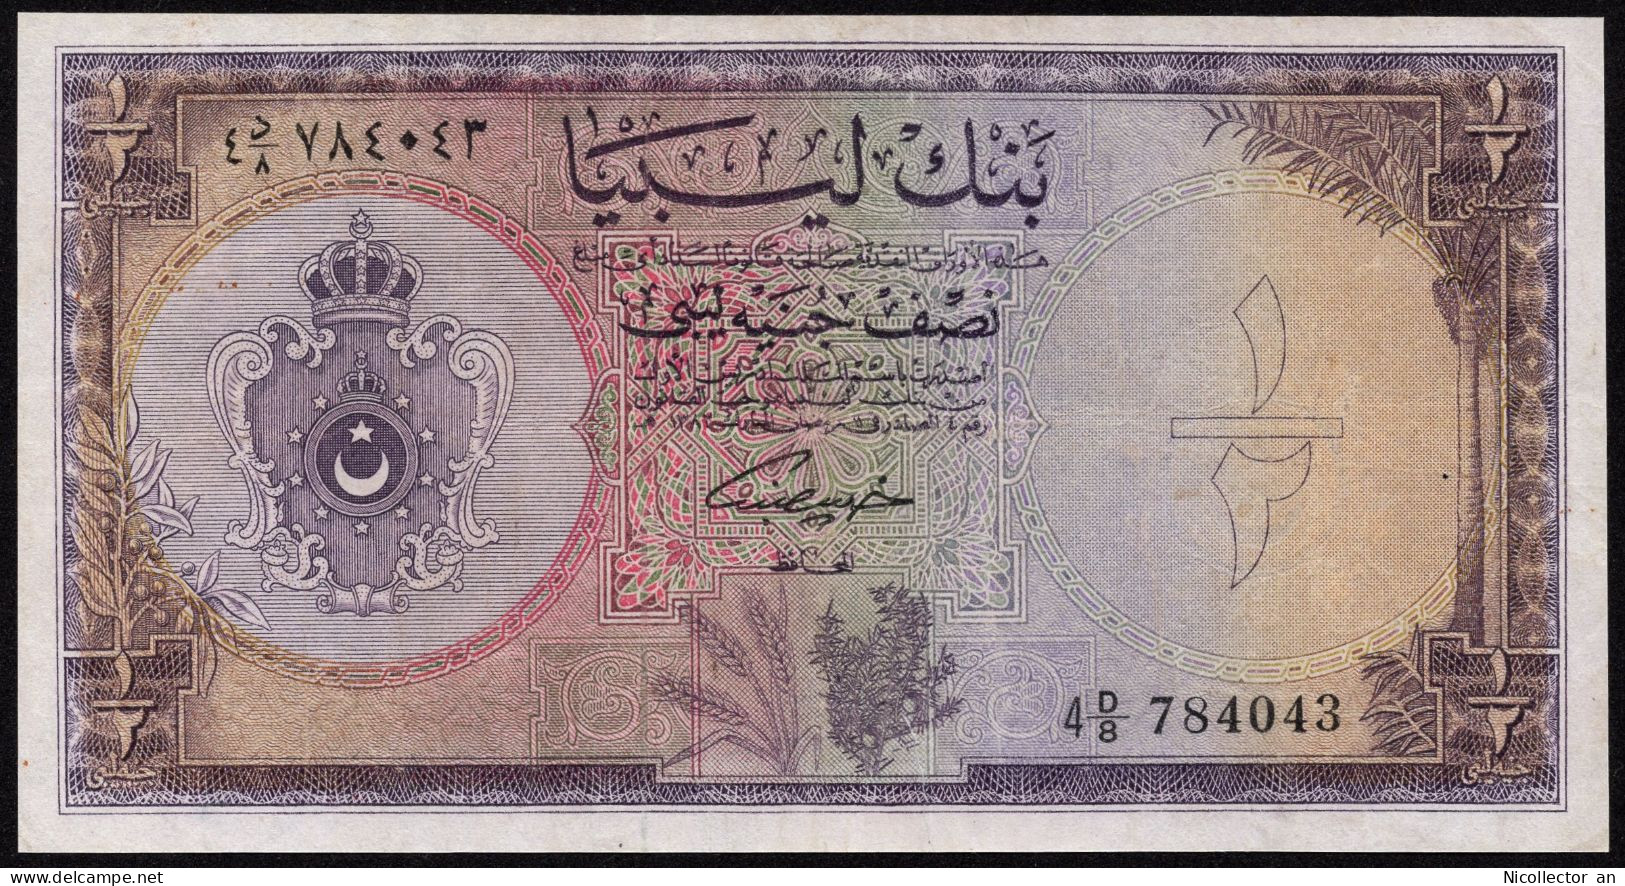 Libya 1/2 Pound 1963 P-24 King Idris *XF* Rare Banknote - Libyen